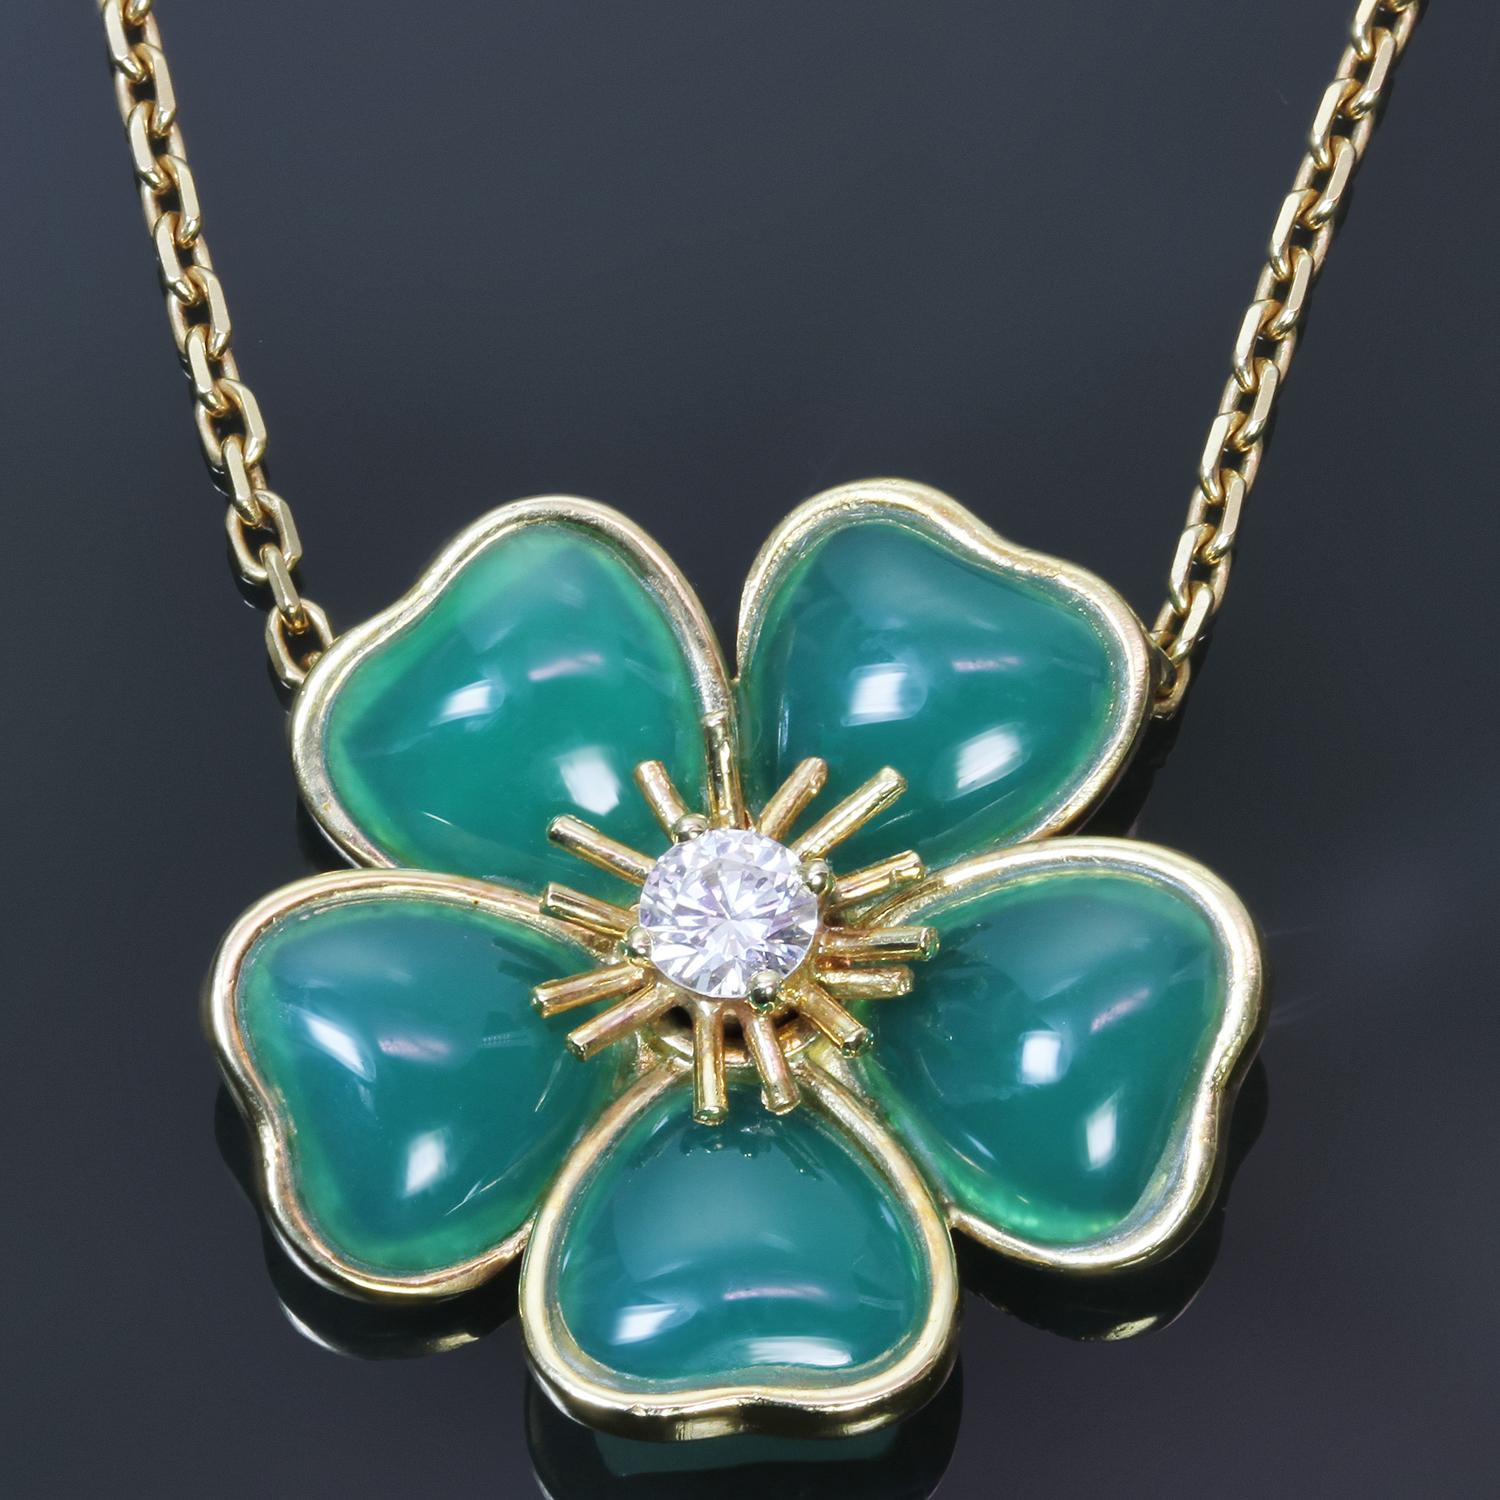 Cet exquis collier vintage authentique Van Cleef & Arpels est issu de l'élégante collection Nerval et présente une fleur à 5 pétales réalisée en or jaune 18 carats et calcédoine verte et sertie d'un diamant rond solitaire de taille brillant E-F-G